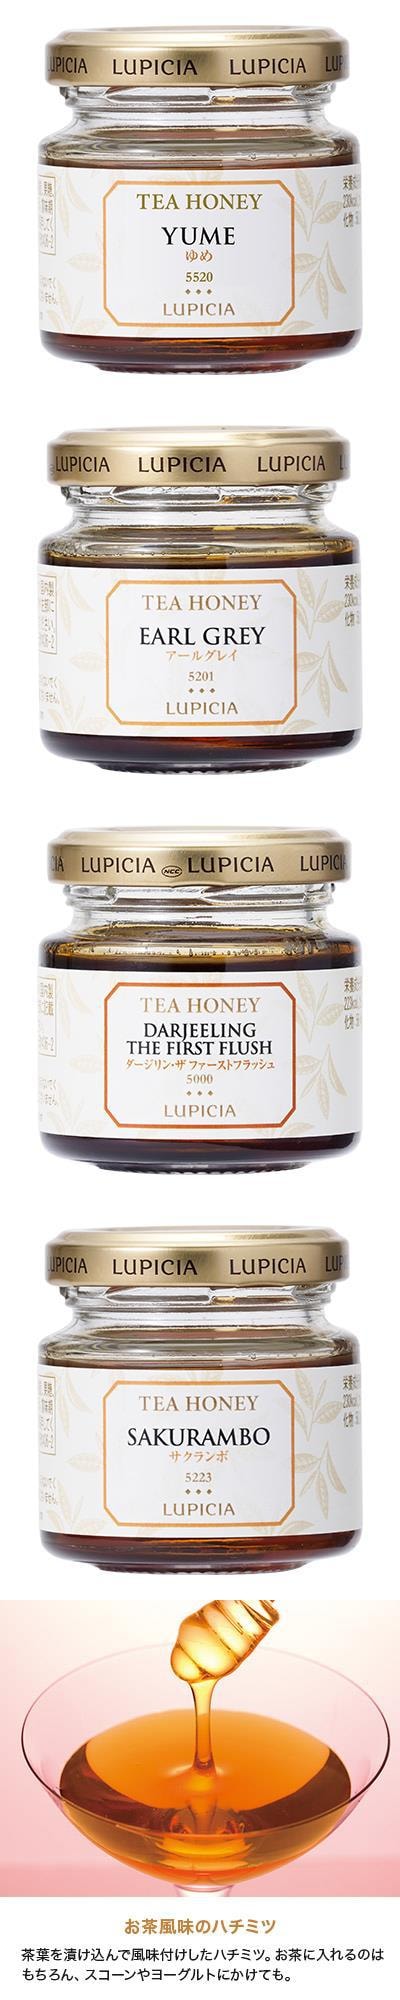 【日本直邮】lupicia 天然原创茶蜂蜜红茶 EARL GREY 格雷伯爵红茶 75g